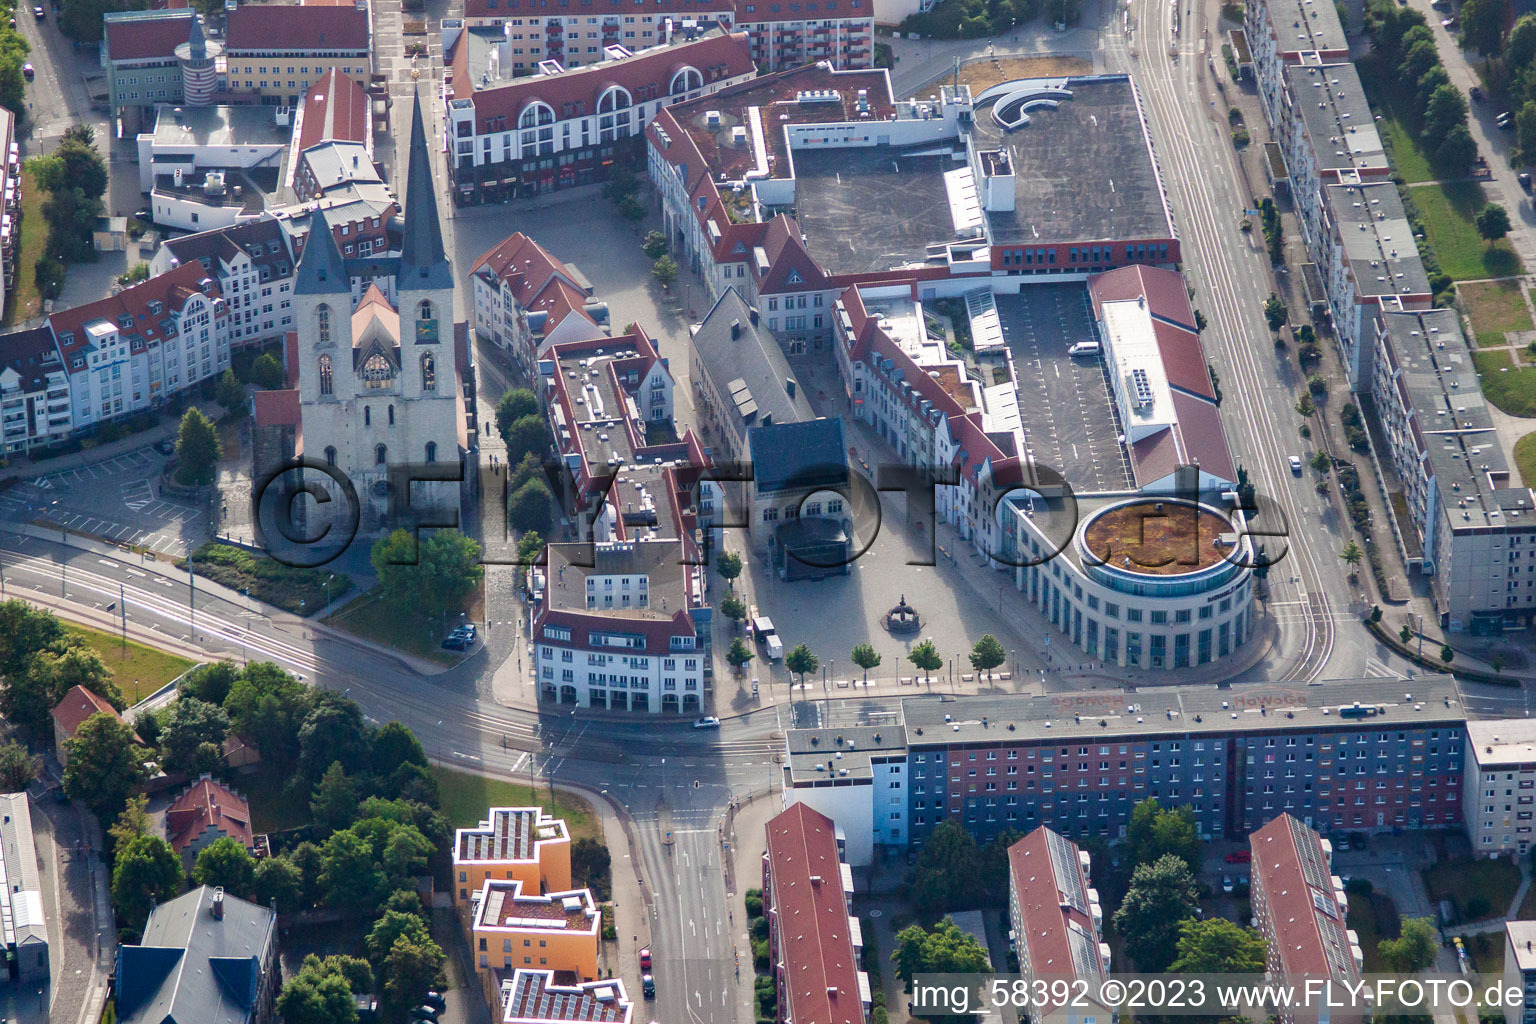 Vue aérienne de Holzmarkt, les arcades de la mairie et l'église Saint-Martini à Halberstadt dans le département Saxe-Anhalt, Allemagne